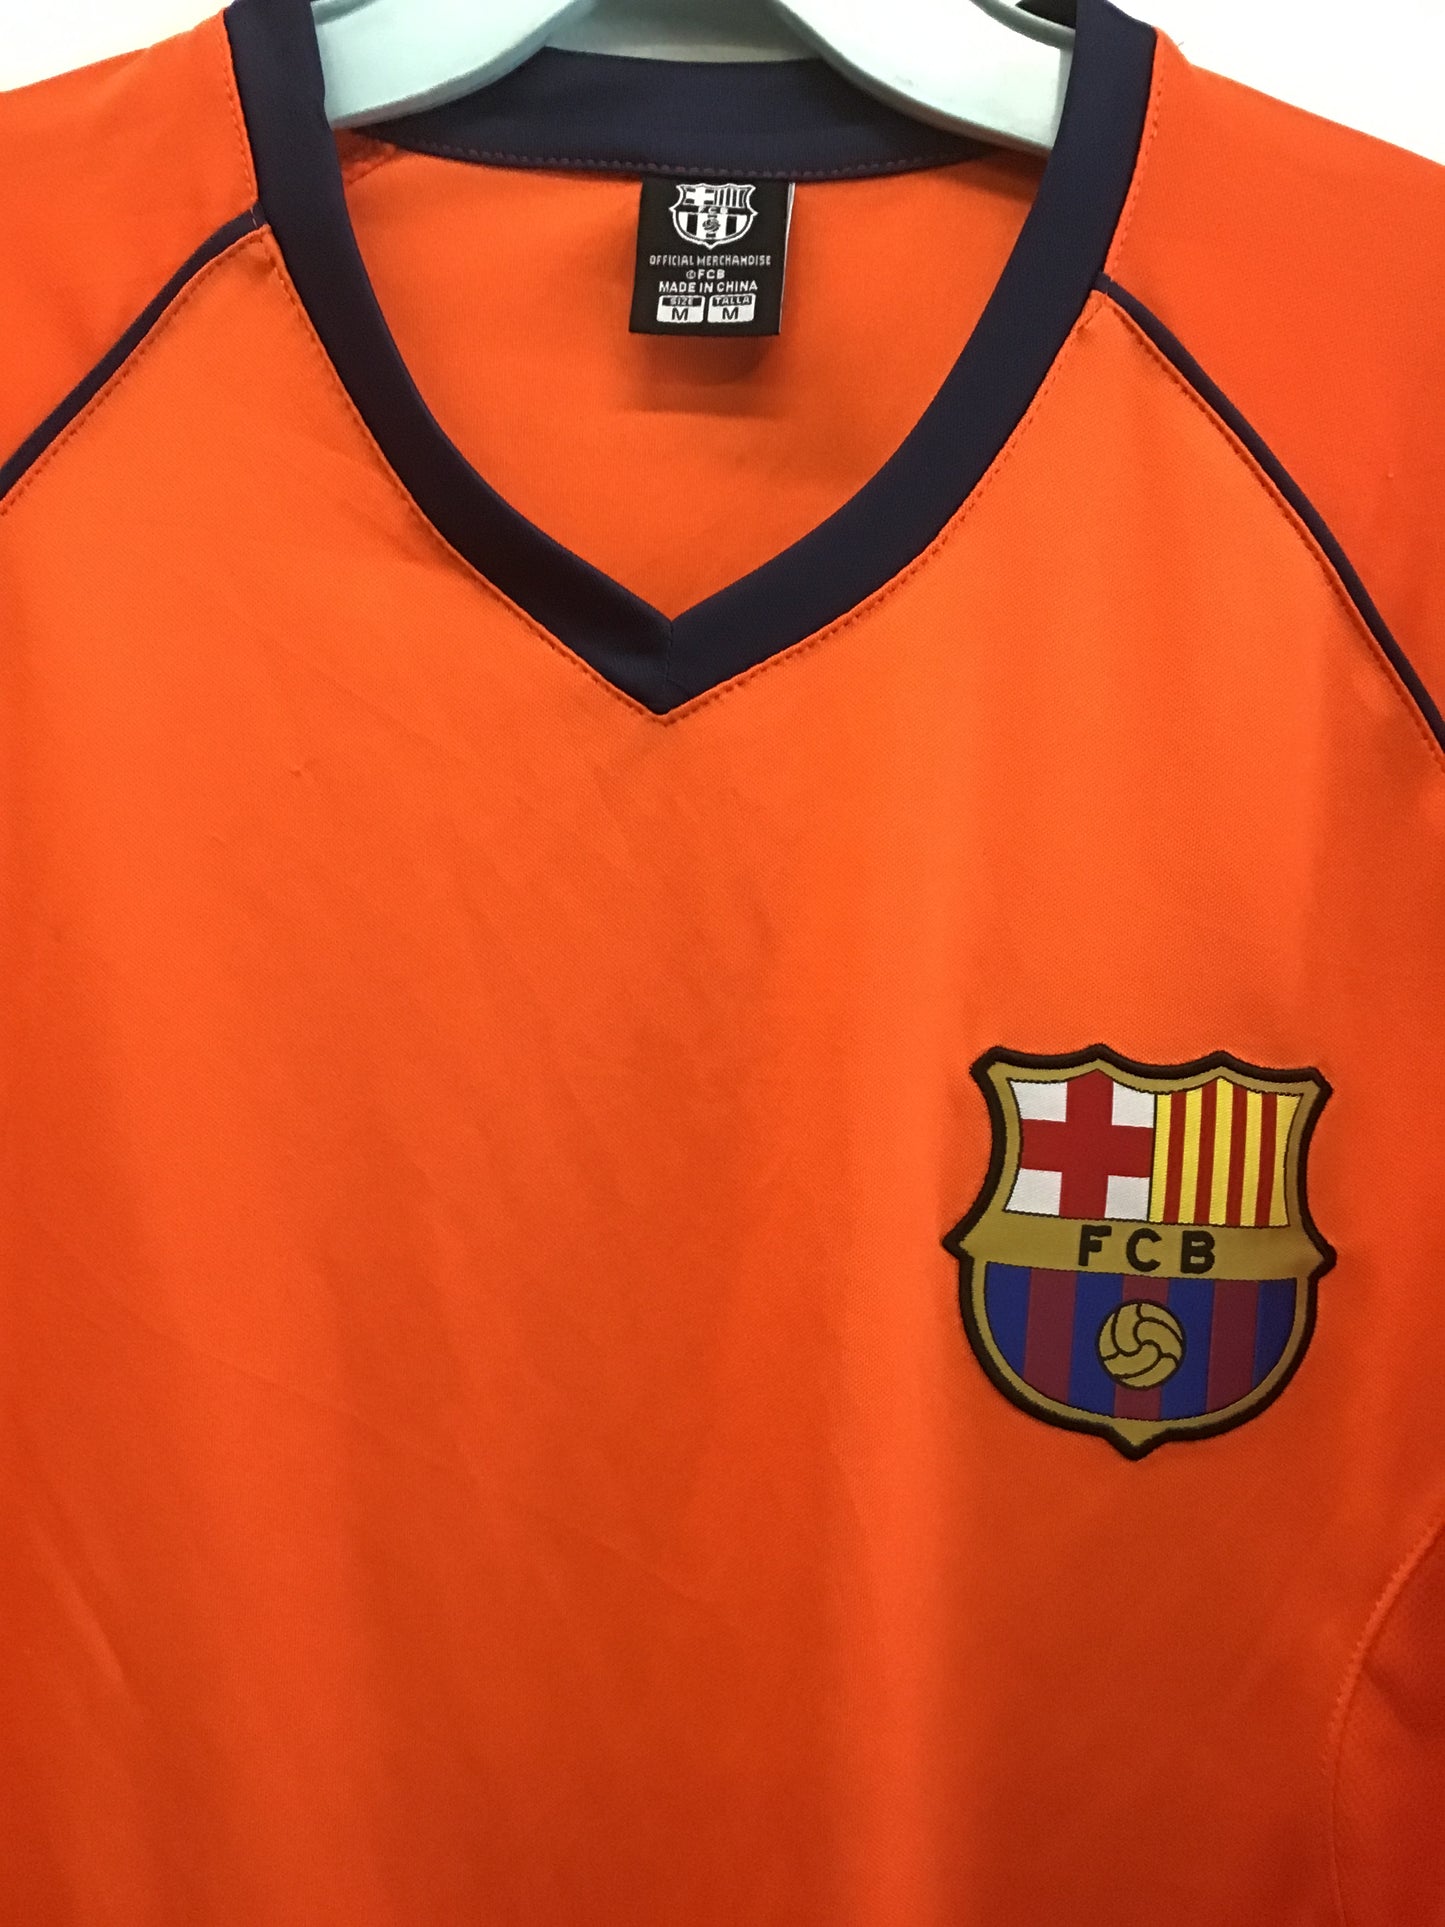 FC Barcelona Jersey, Size M